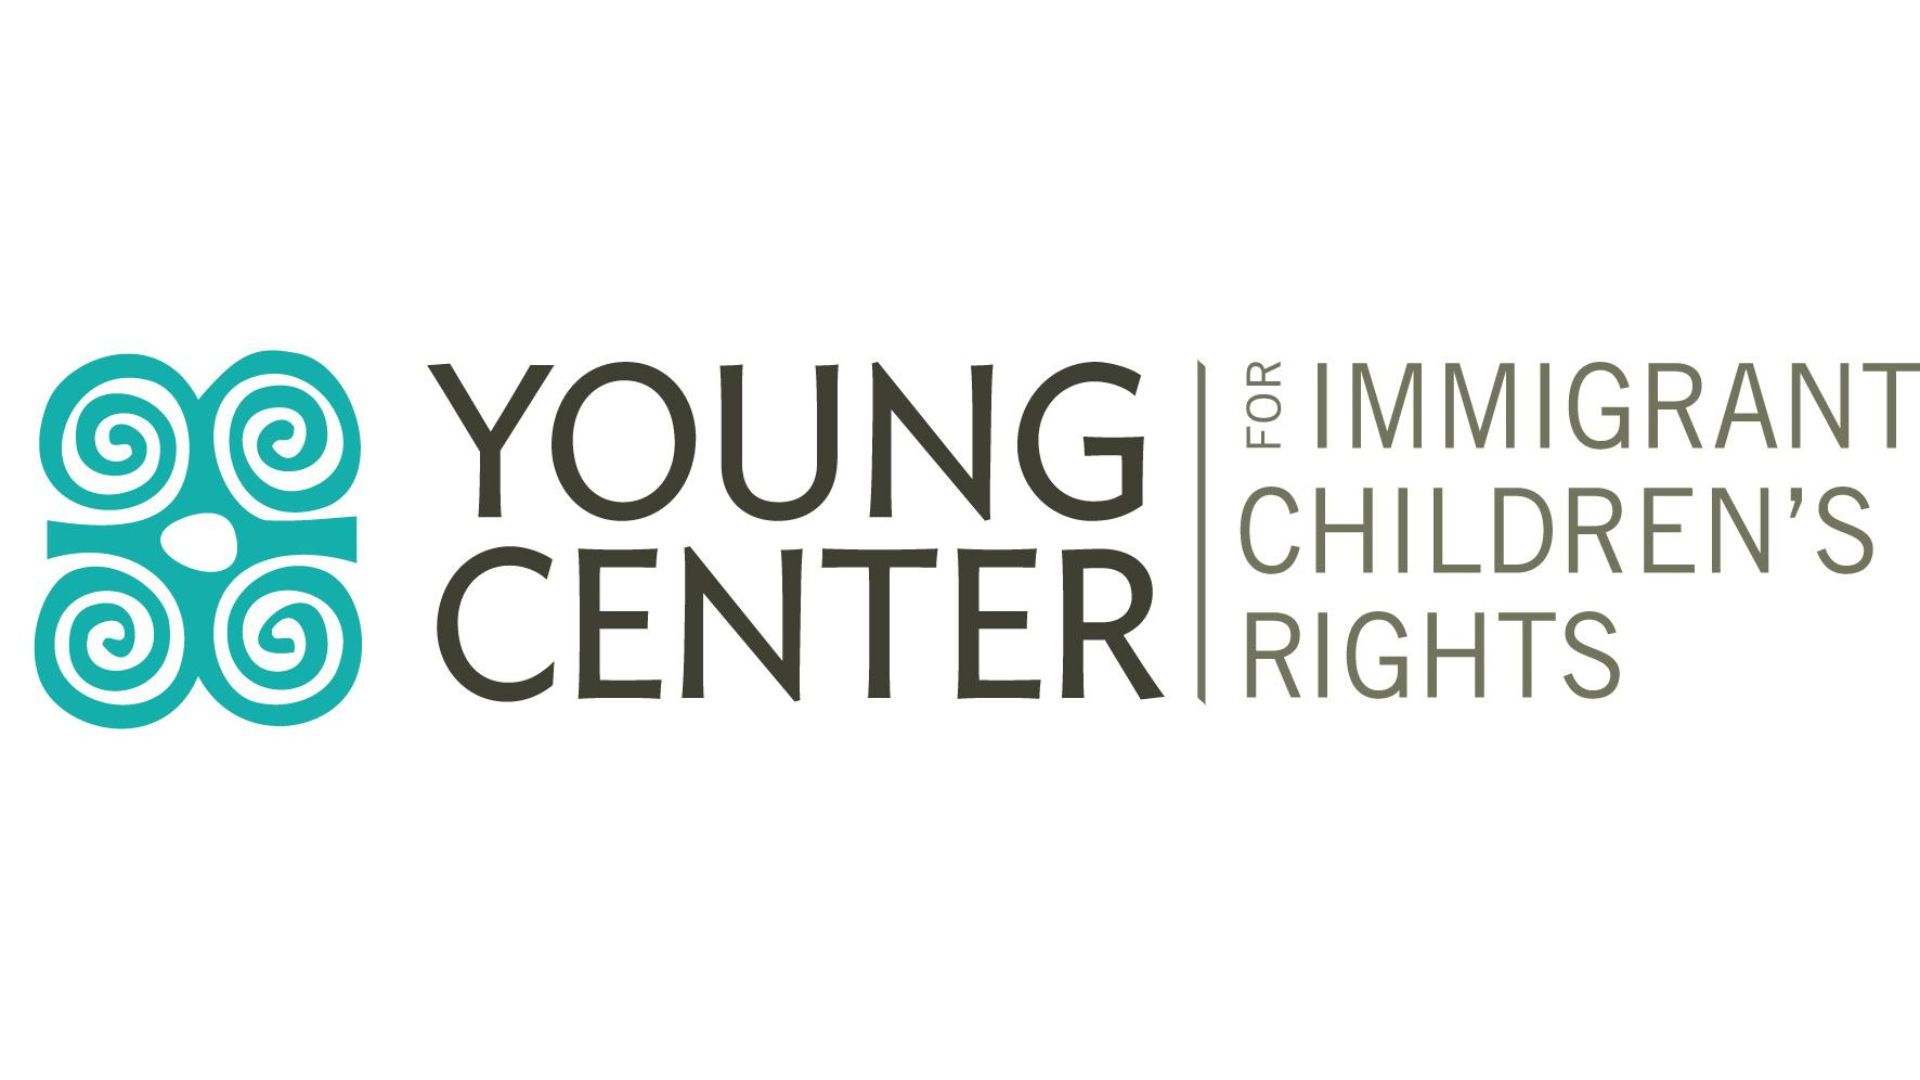 Non-profit to train volunteer advocates for unaccompanied child immigrants